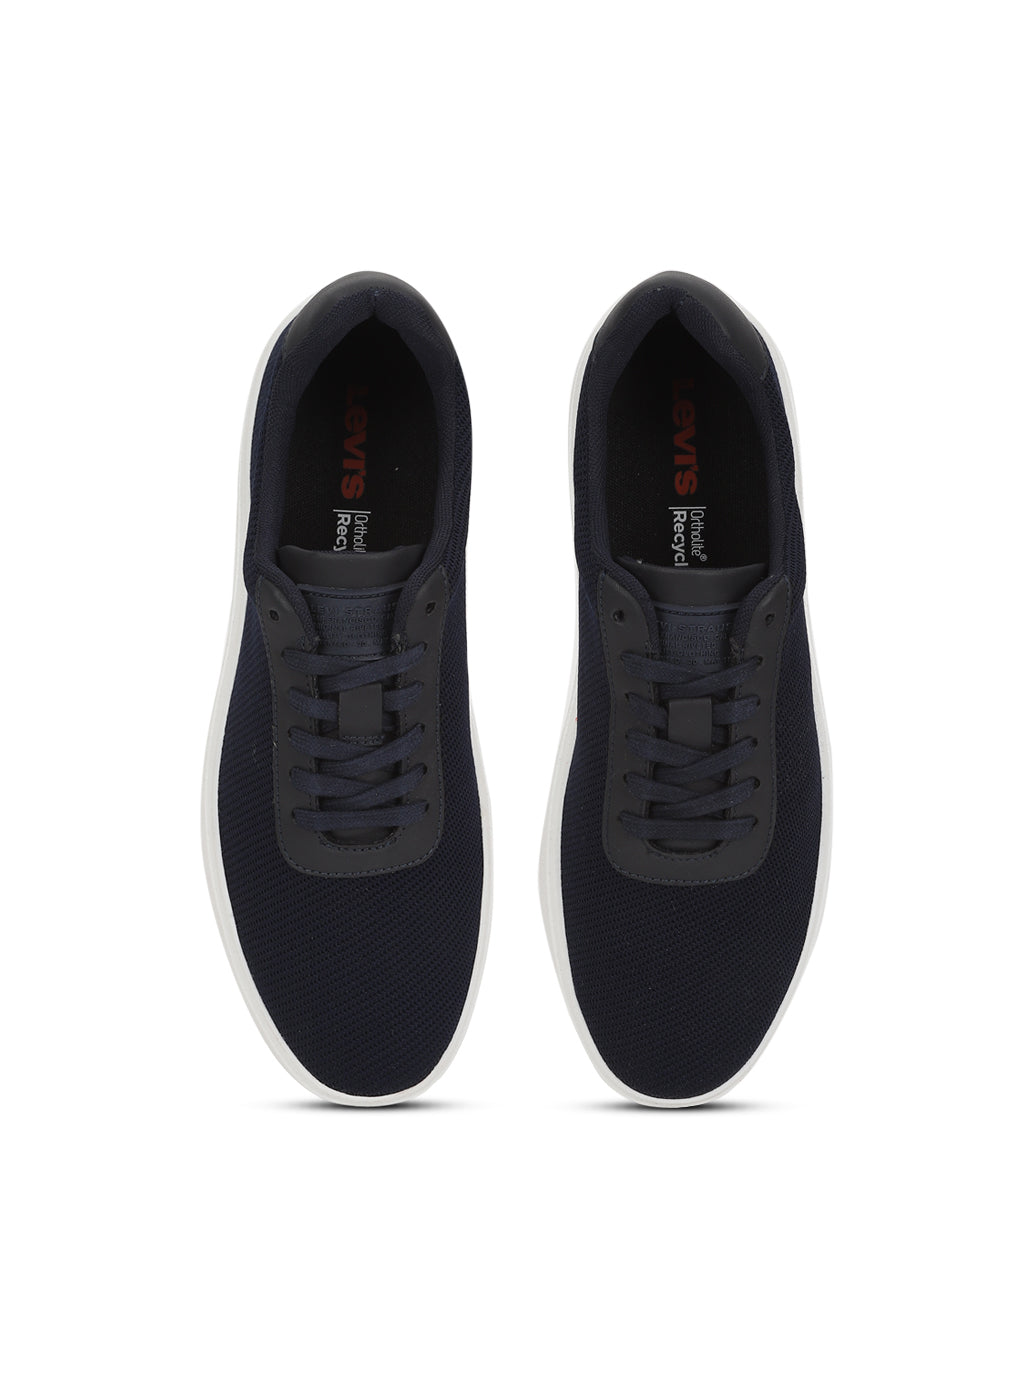 Men's Street Navy Casual Sneakers